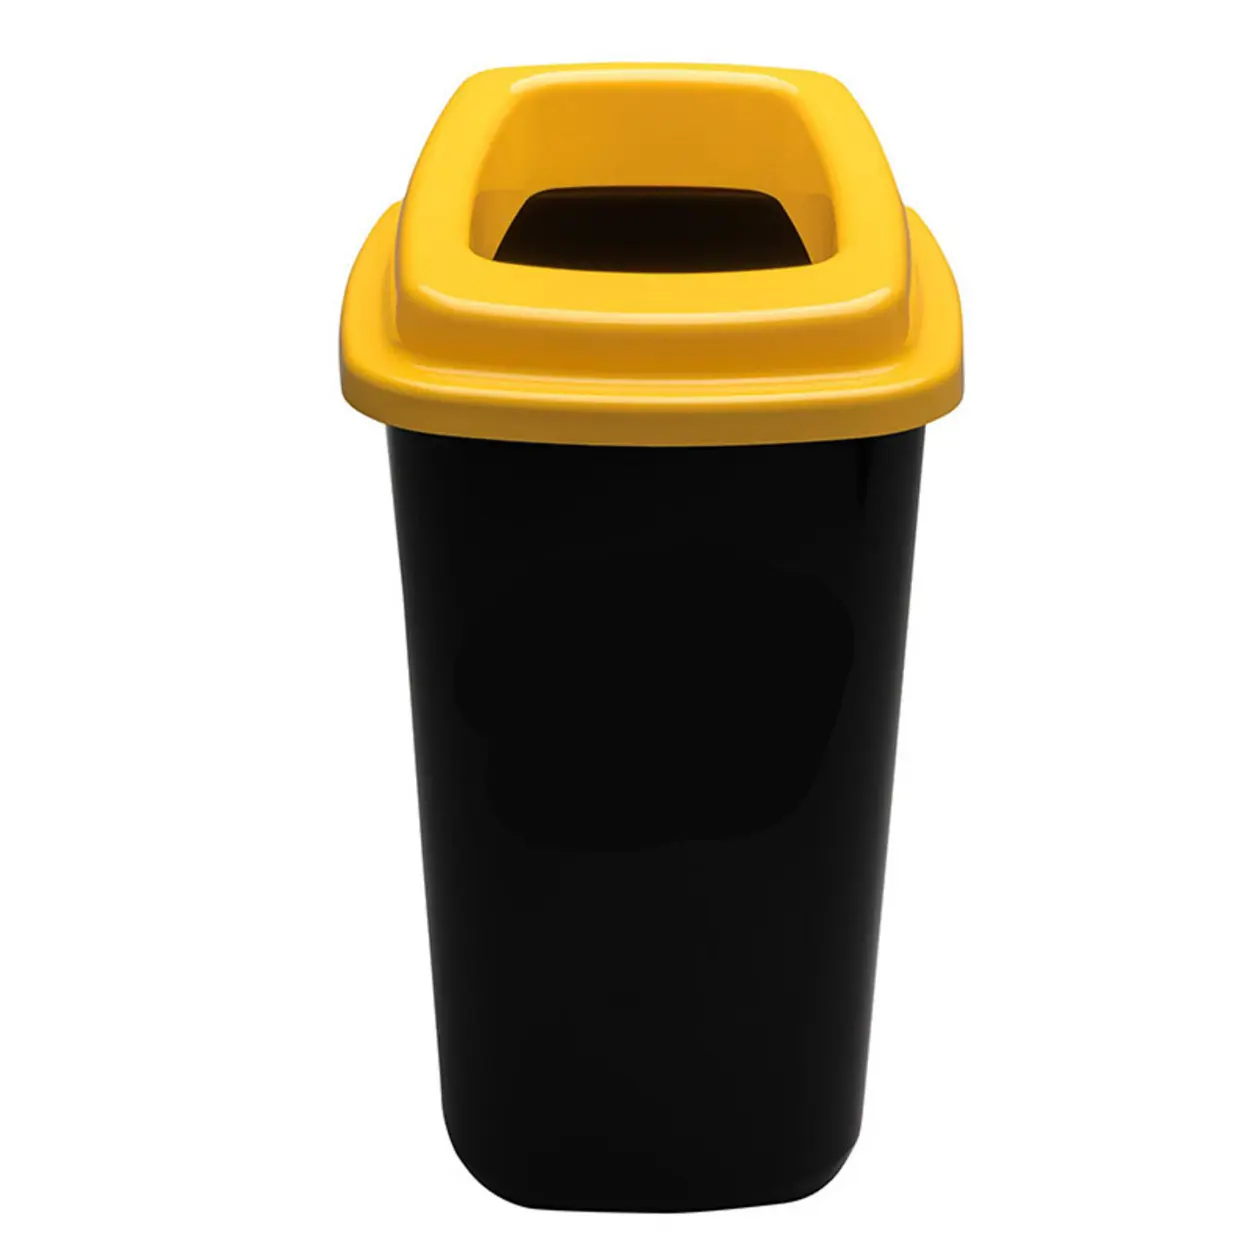 Plastikowy kosz do segregacji śmieci, 45 l, żółty